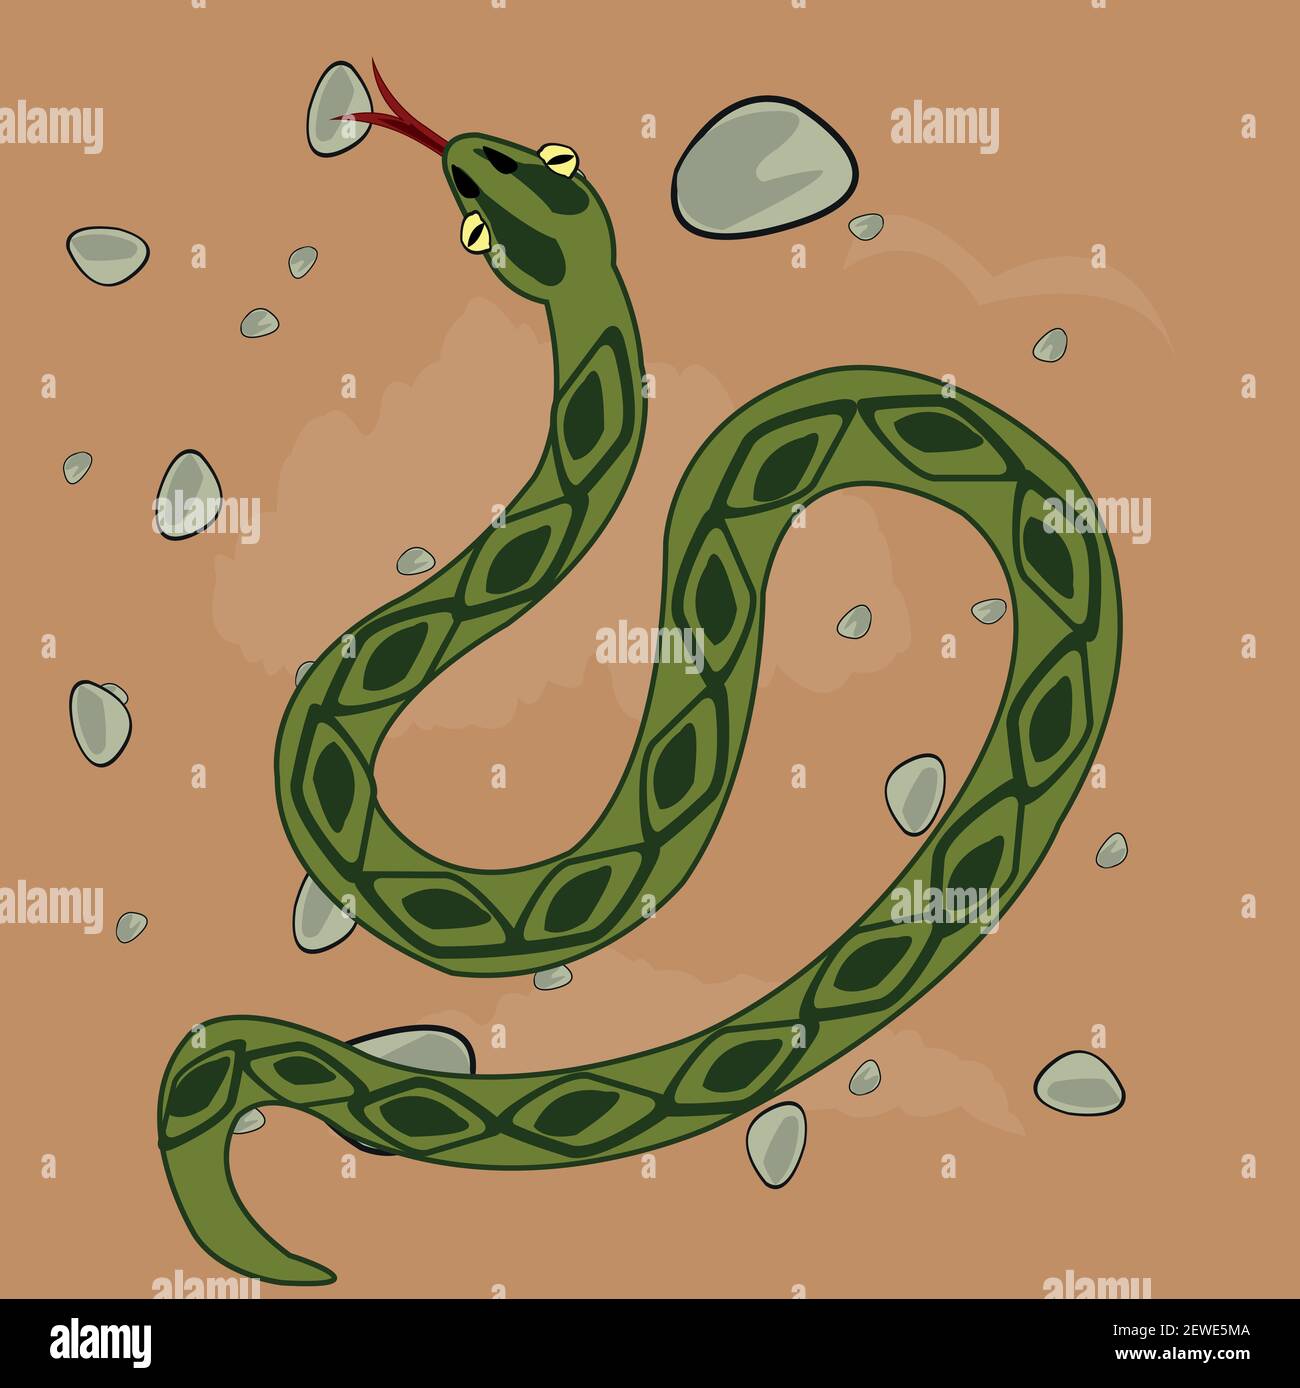 Vektor-Illustration zu Wüsten und groveling Tier Schlange Stock Vektor